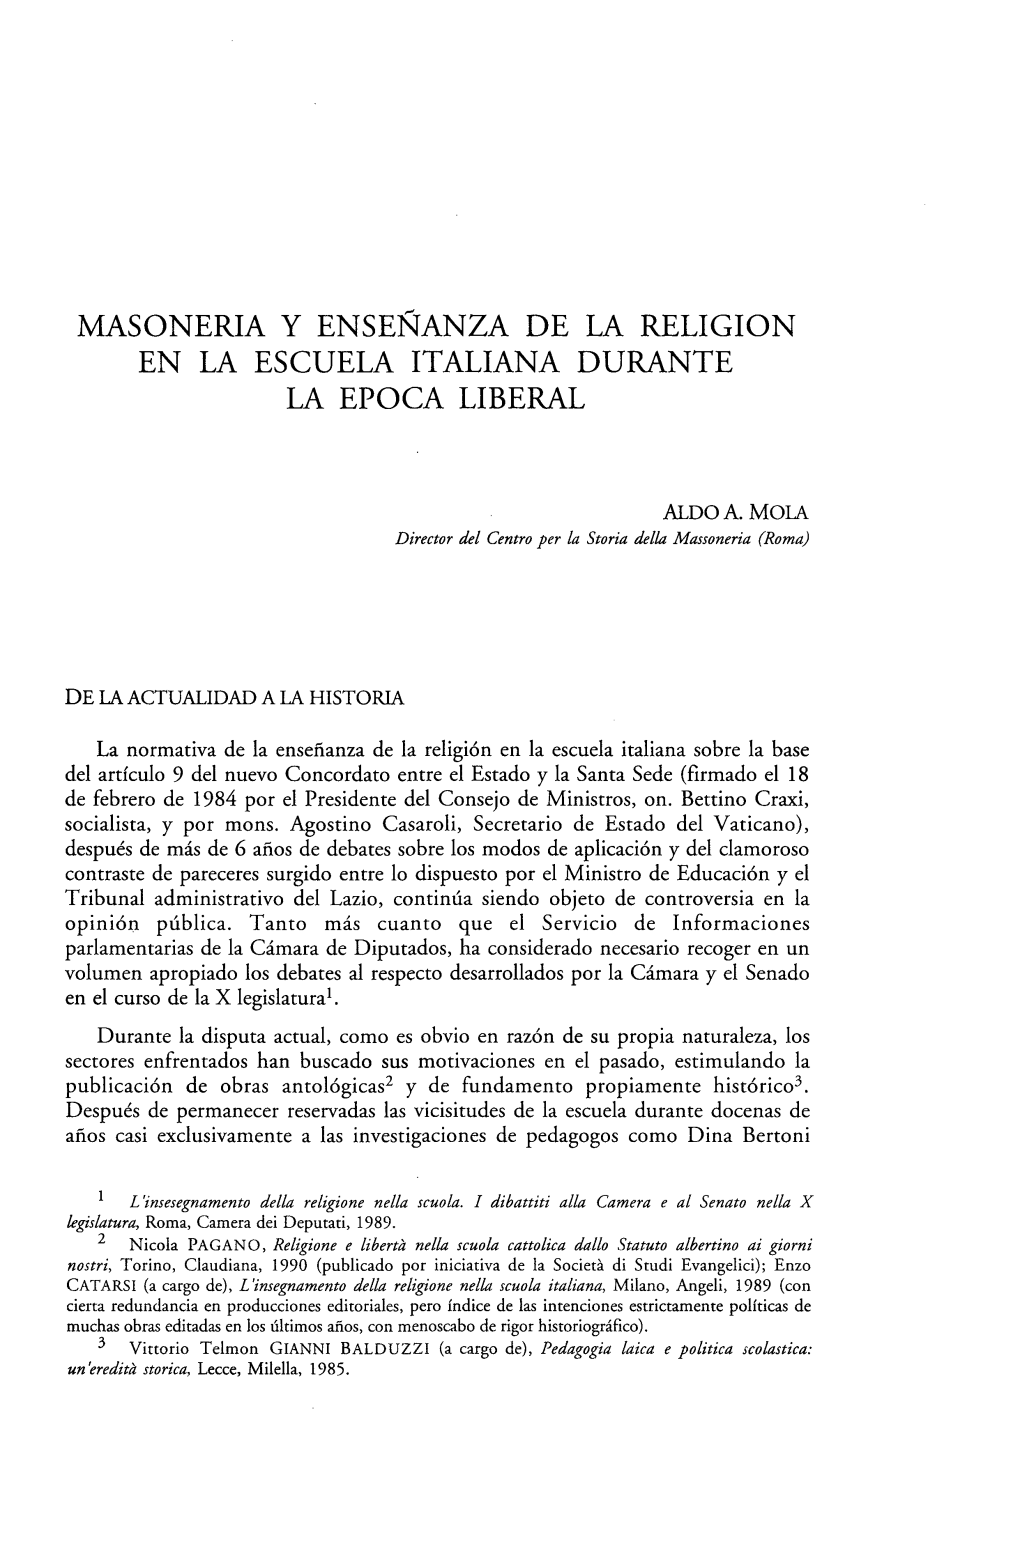 Masonería Y Enseñanza De La Religion En La Escuela Italiana Durante La Epoca Liberal